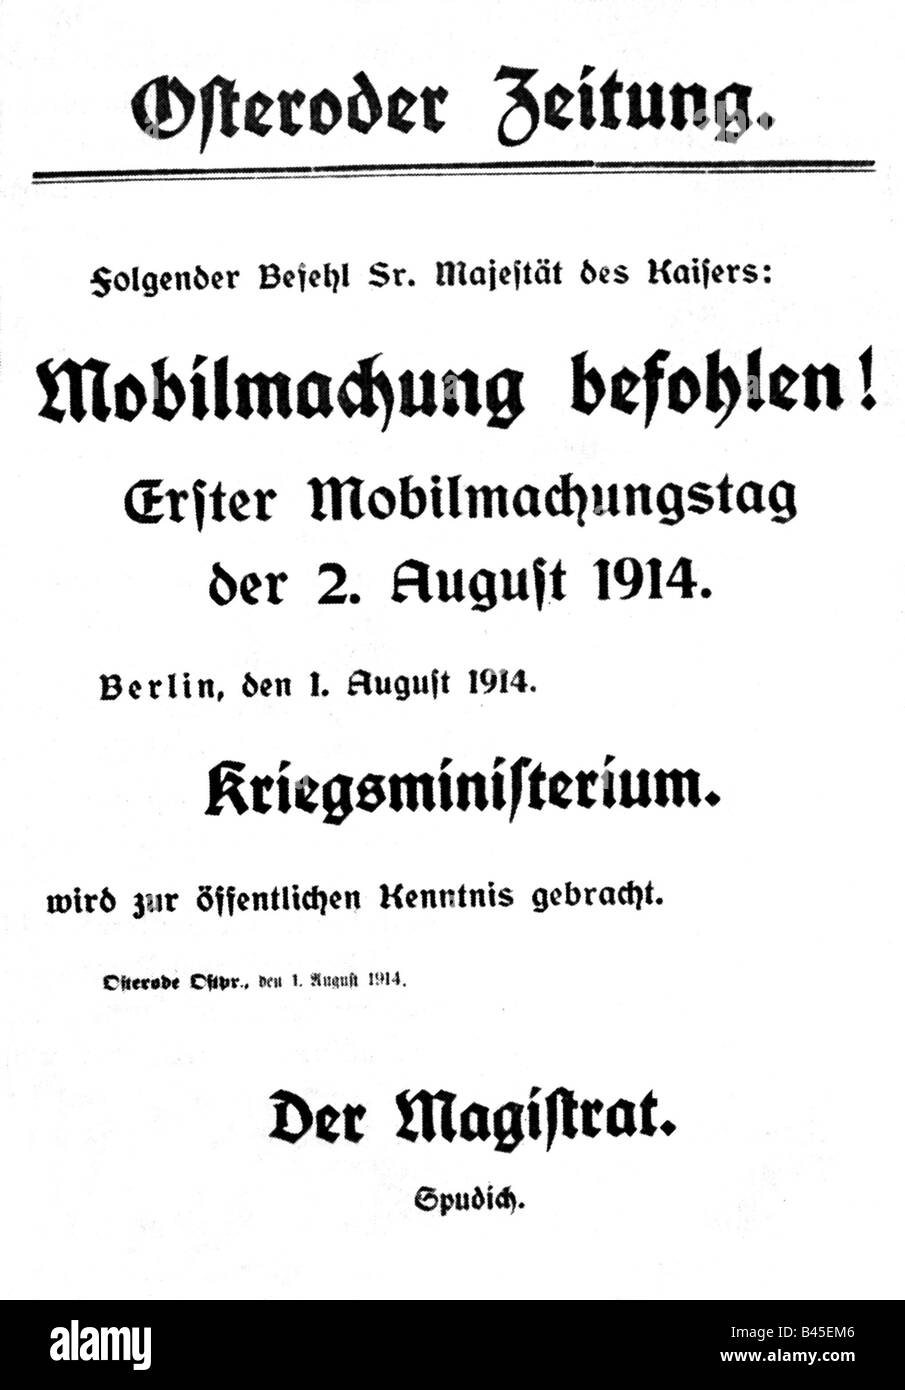 Eventi, Prima guerra mondiale / WWI, scoppio della guerra, 'Mobilmachung befohlen!' (Mobilitazione ordinata!), bollettino speciale, 'Osteroder Zeitung', 1.8.1914, Foto Stock